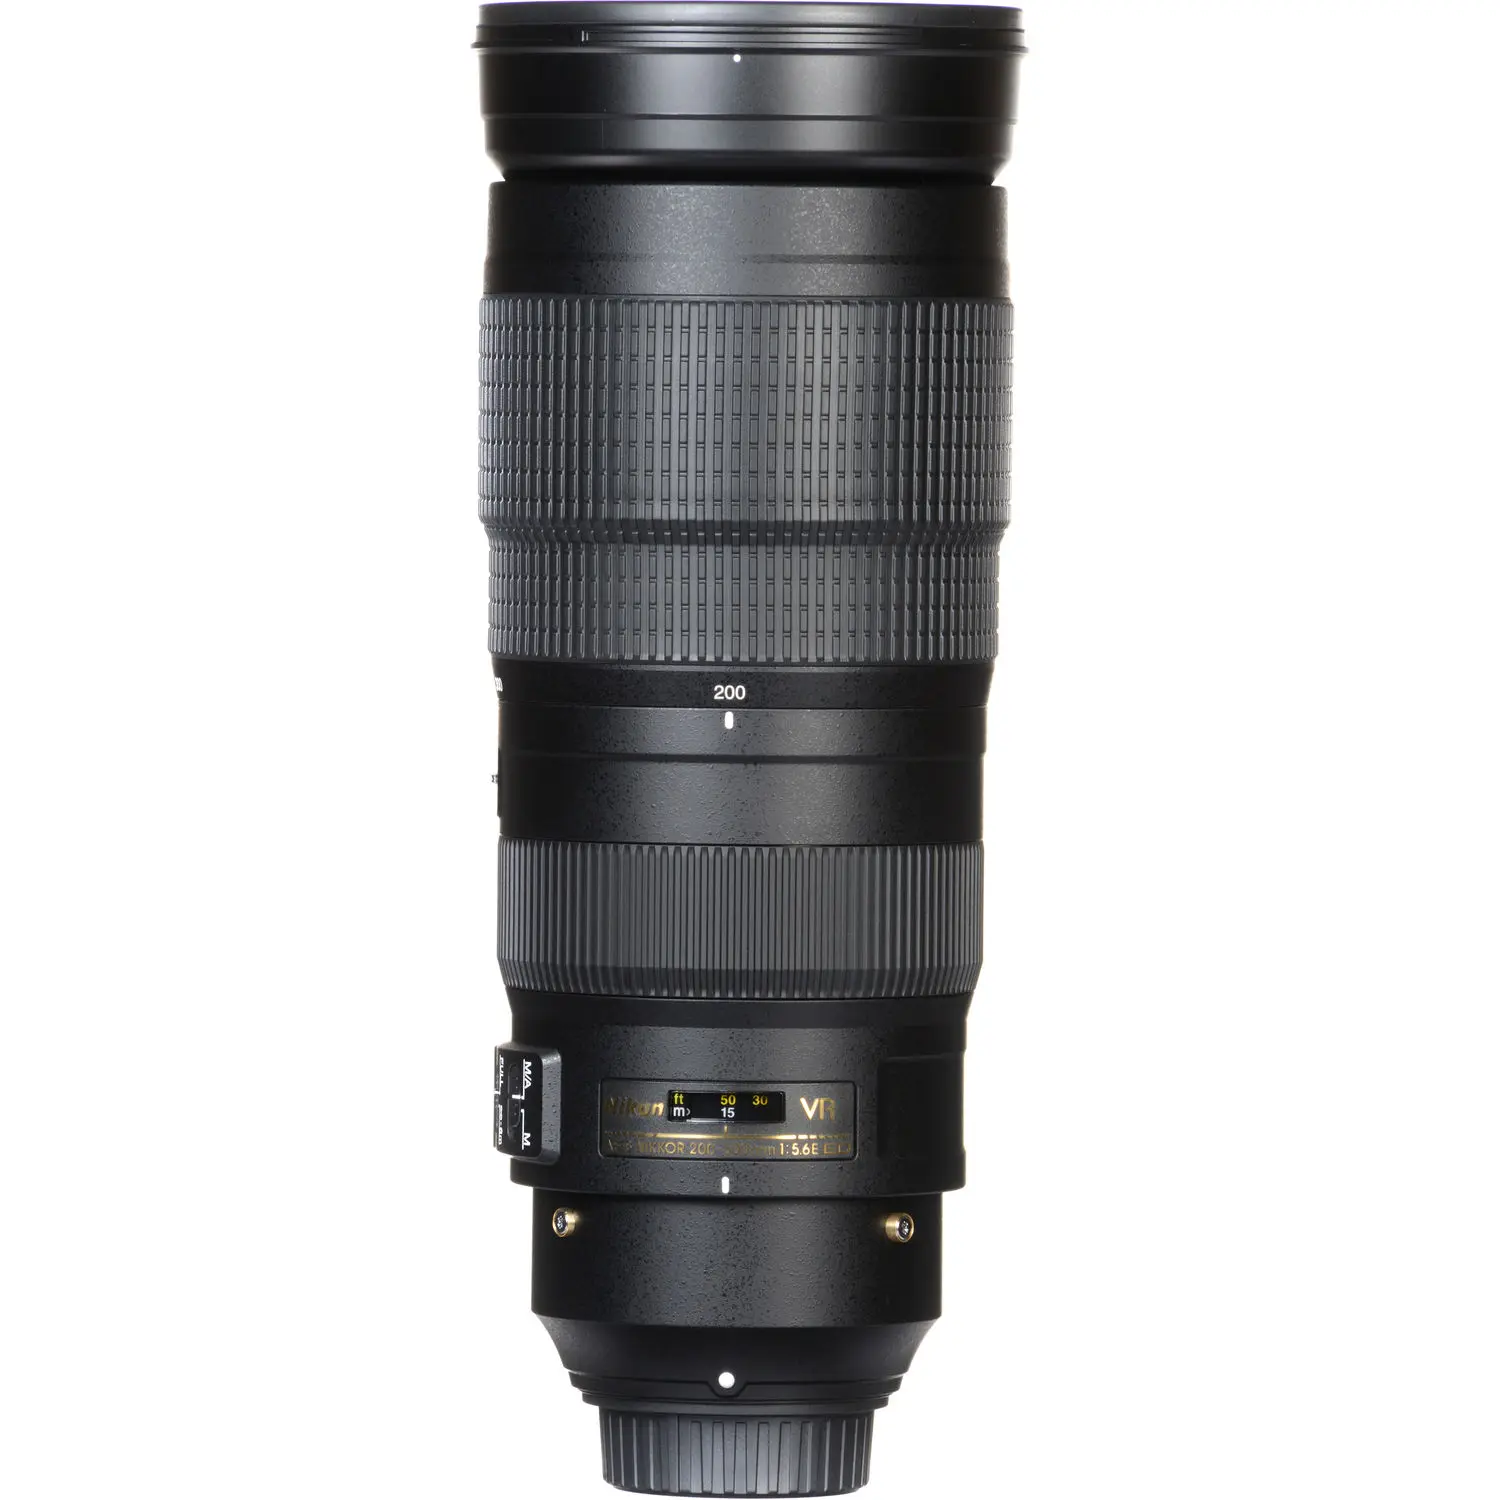 

NIKON AF-S 200-500MM F5.6E ED VR Lens with Auto Focus for Nikon DSLR Cameras